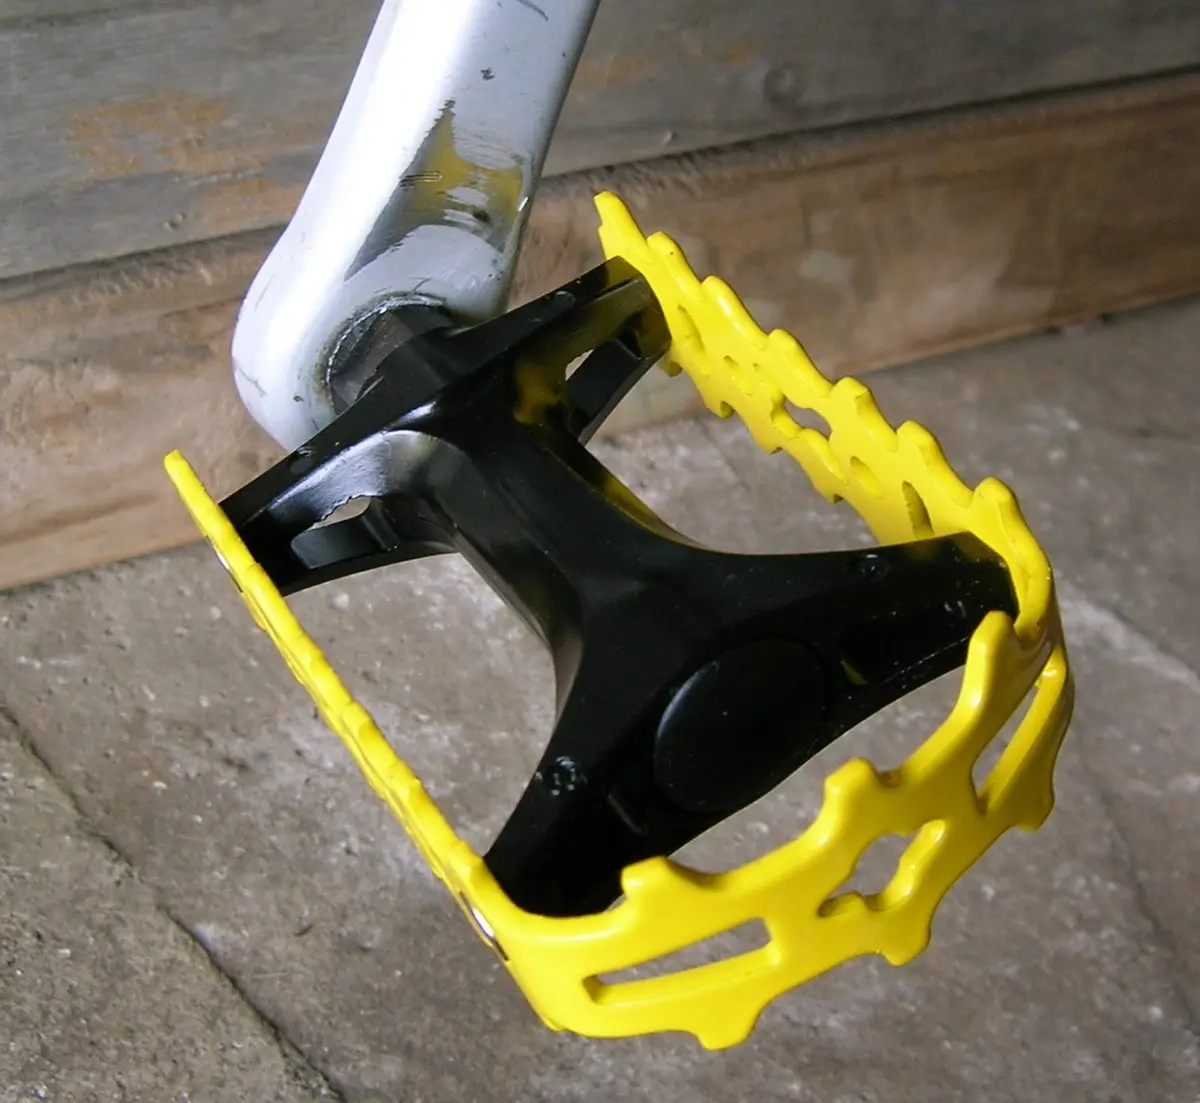 pedal plastico bicicleta - Cómo son los pedales de una bicicleta